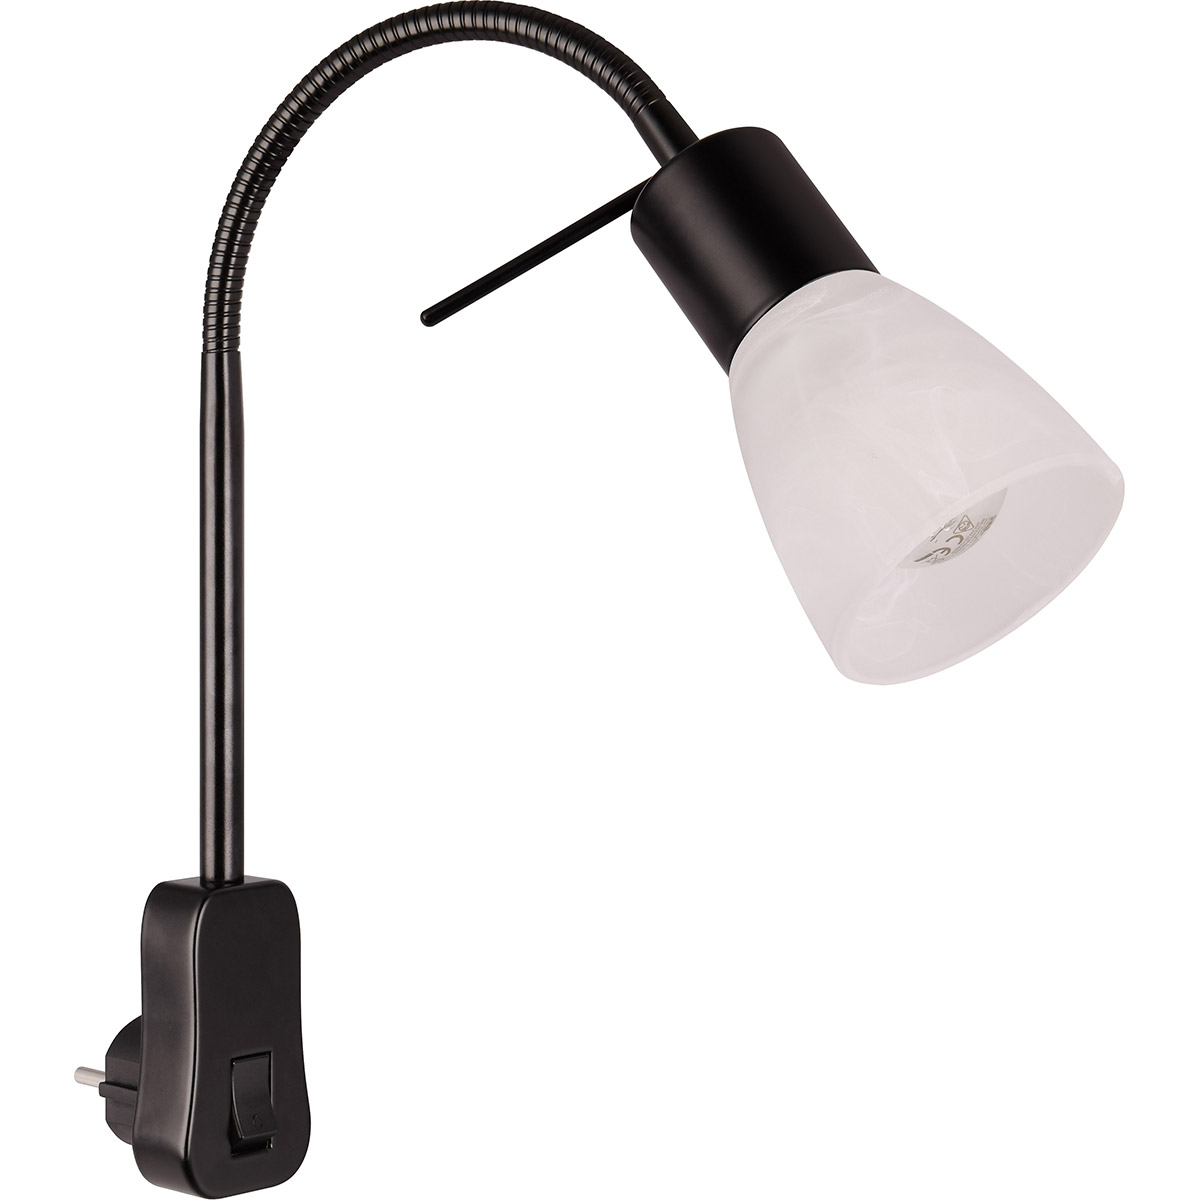 Stekkerlamp met Schakelaar - Trion Fukara - E14 Fitting - 4.9W - Warm Wit 3000K - Mat Zwart - Metaal